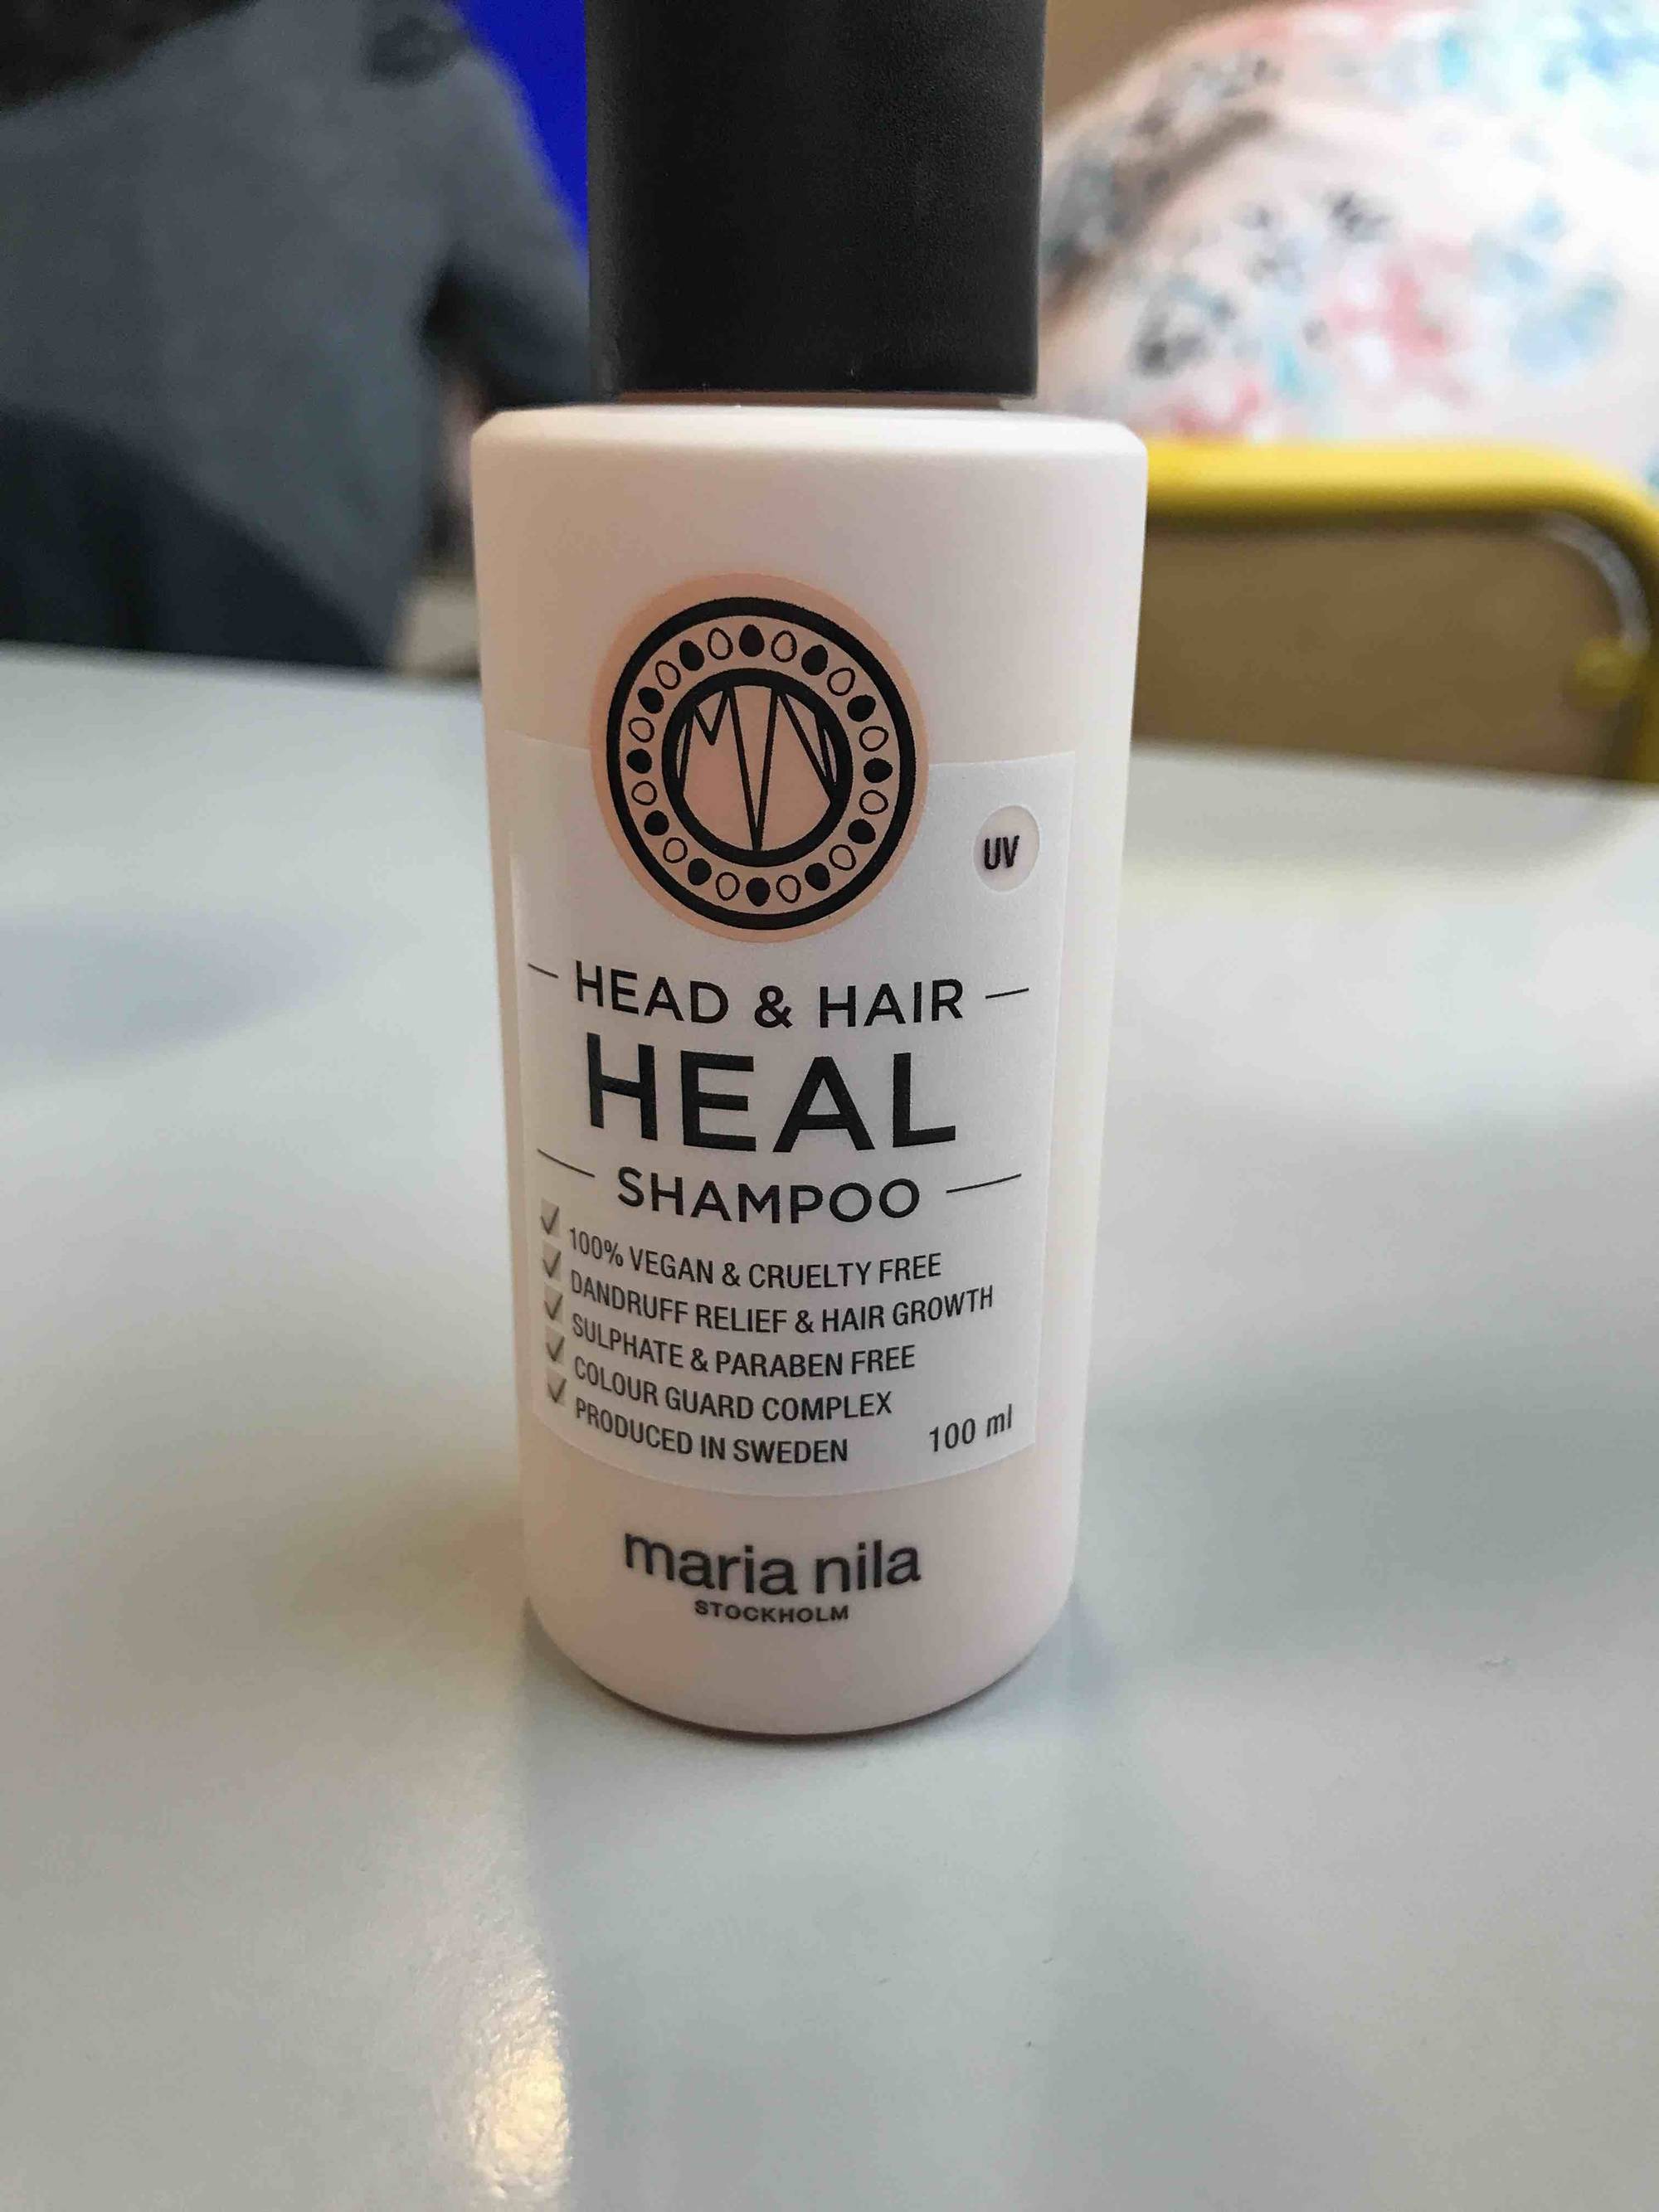 MARIA NILA - Head et hair heal shampoo 